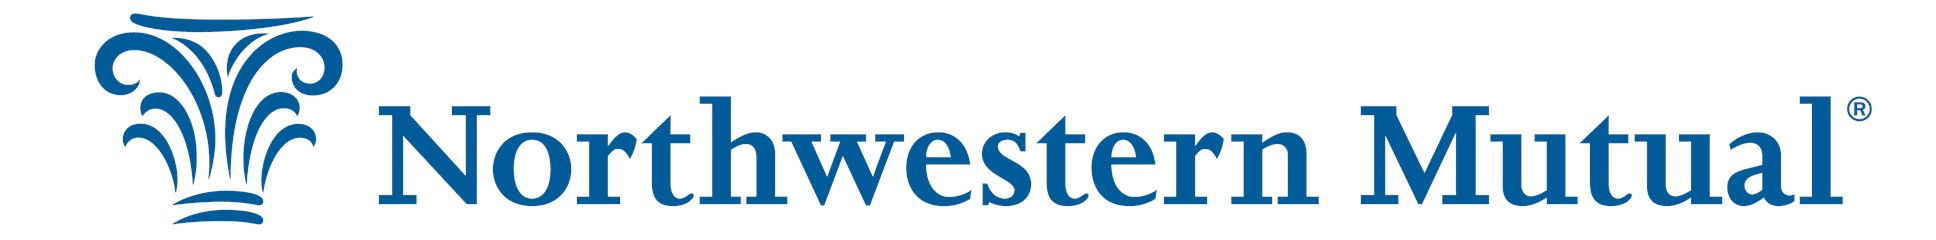 Northwestern Mutual - Capital Region logo